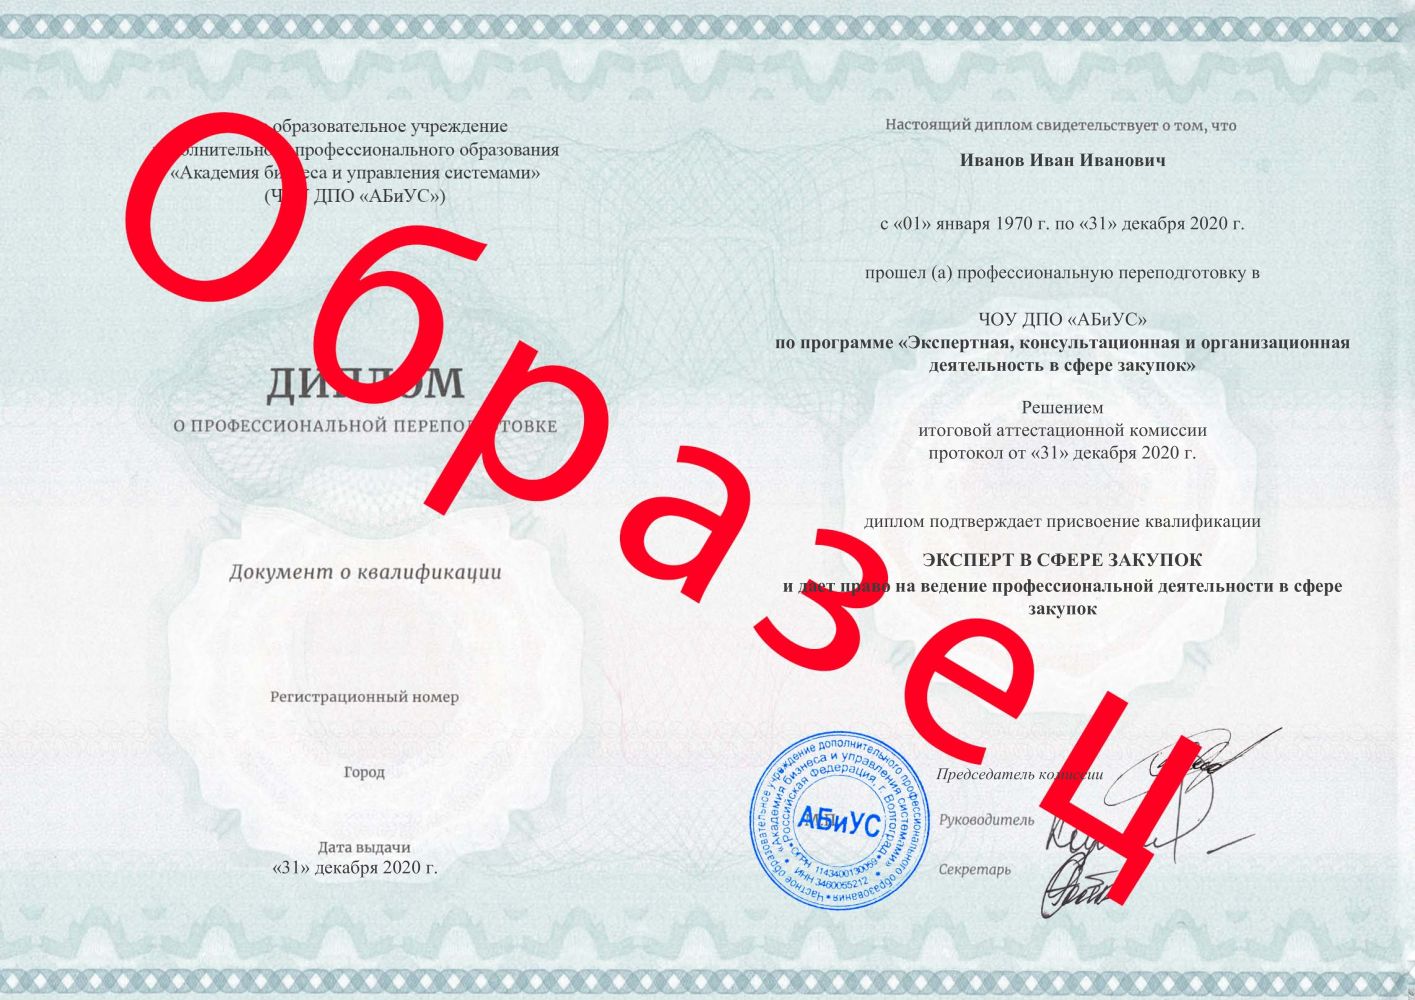 Диплом Экспертная, консультационная и организационная деятельность в сфере закупок 500 часов 11375 руб.